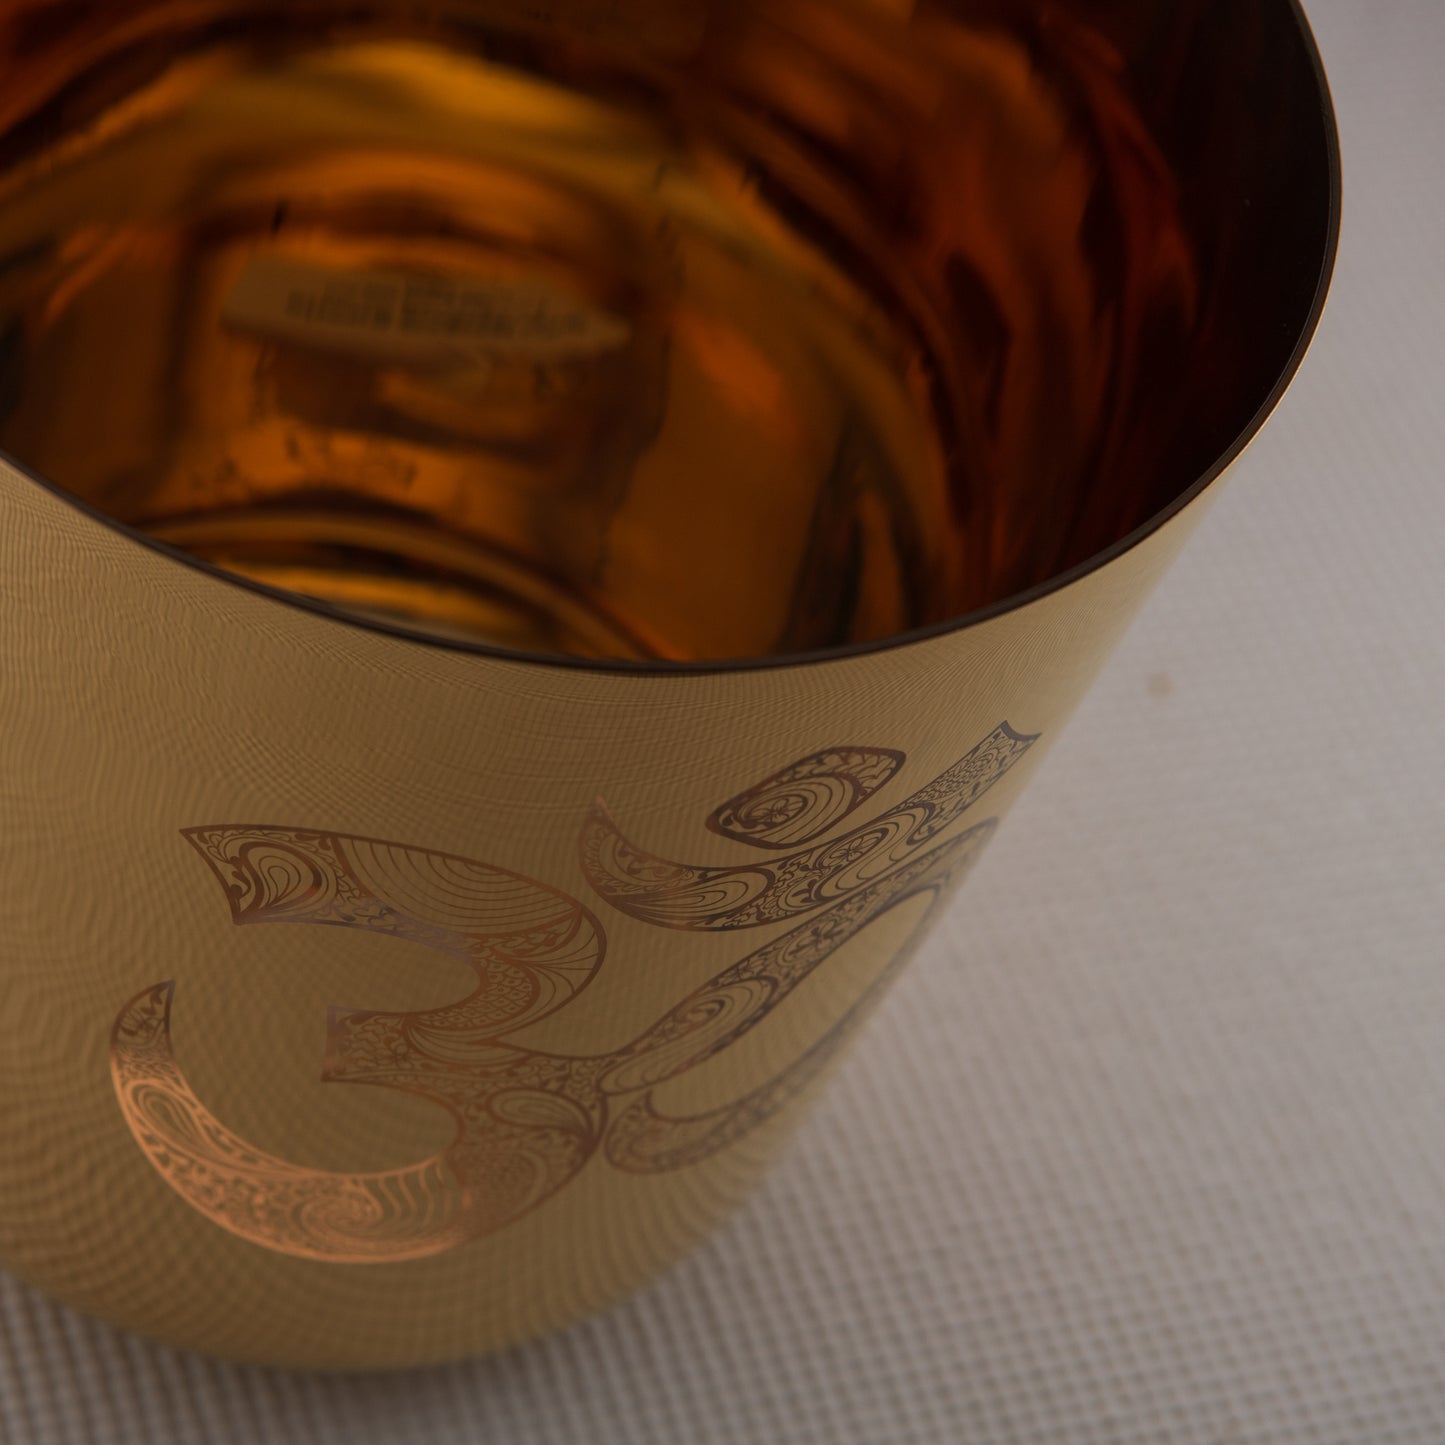 9" C-11 24k Gold Crystal Singing Bowl with Sacred Om Symbol